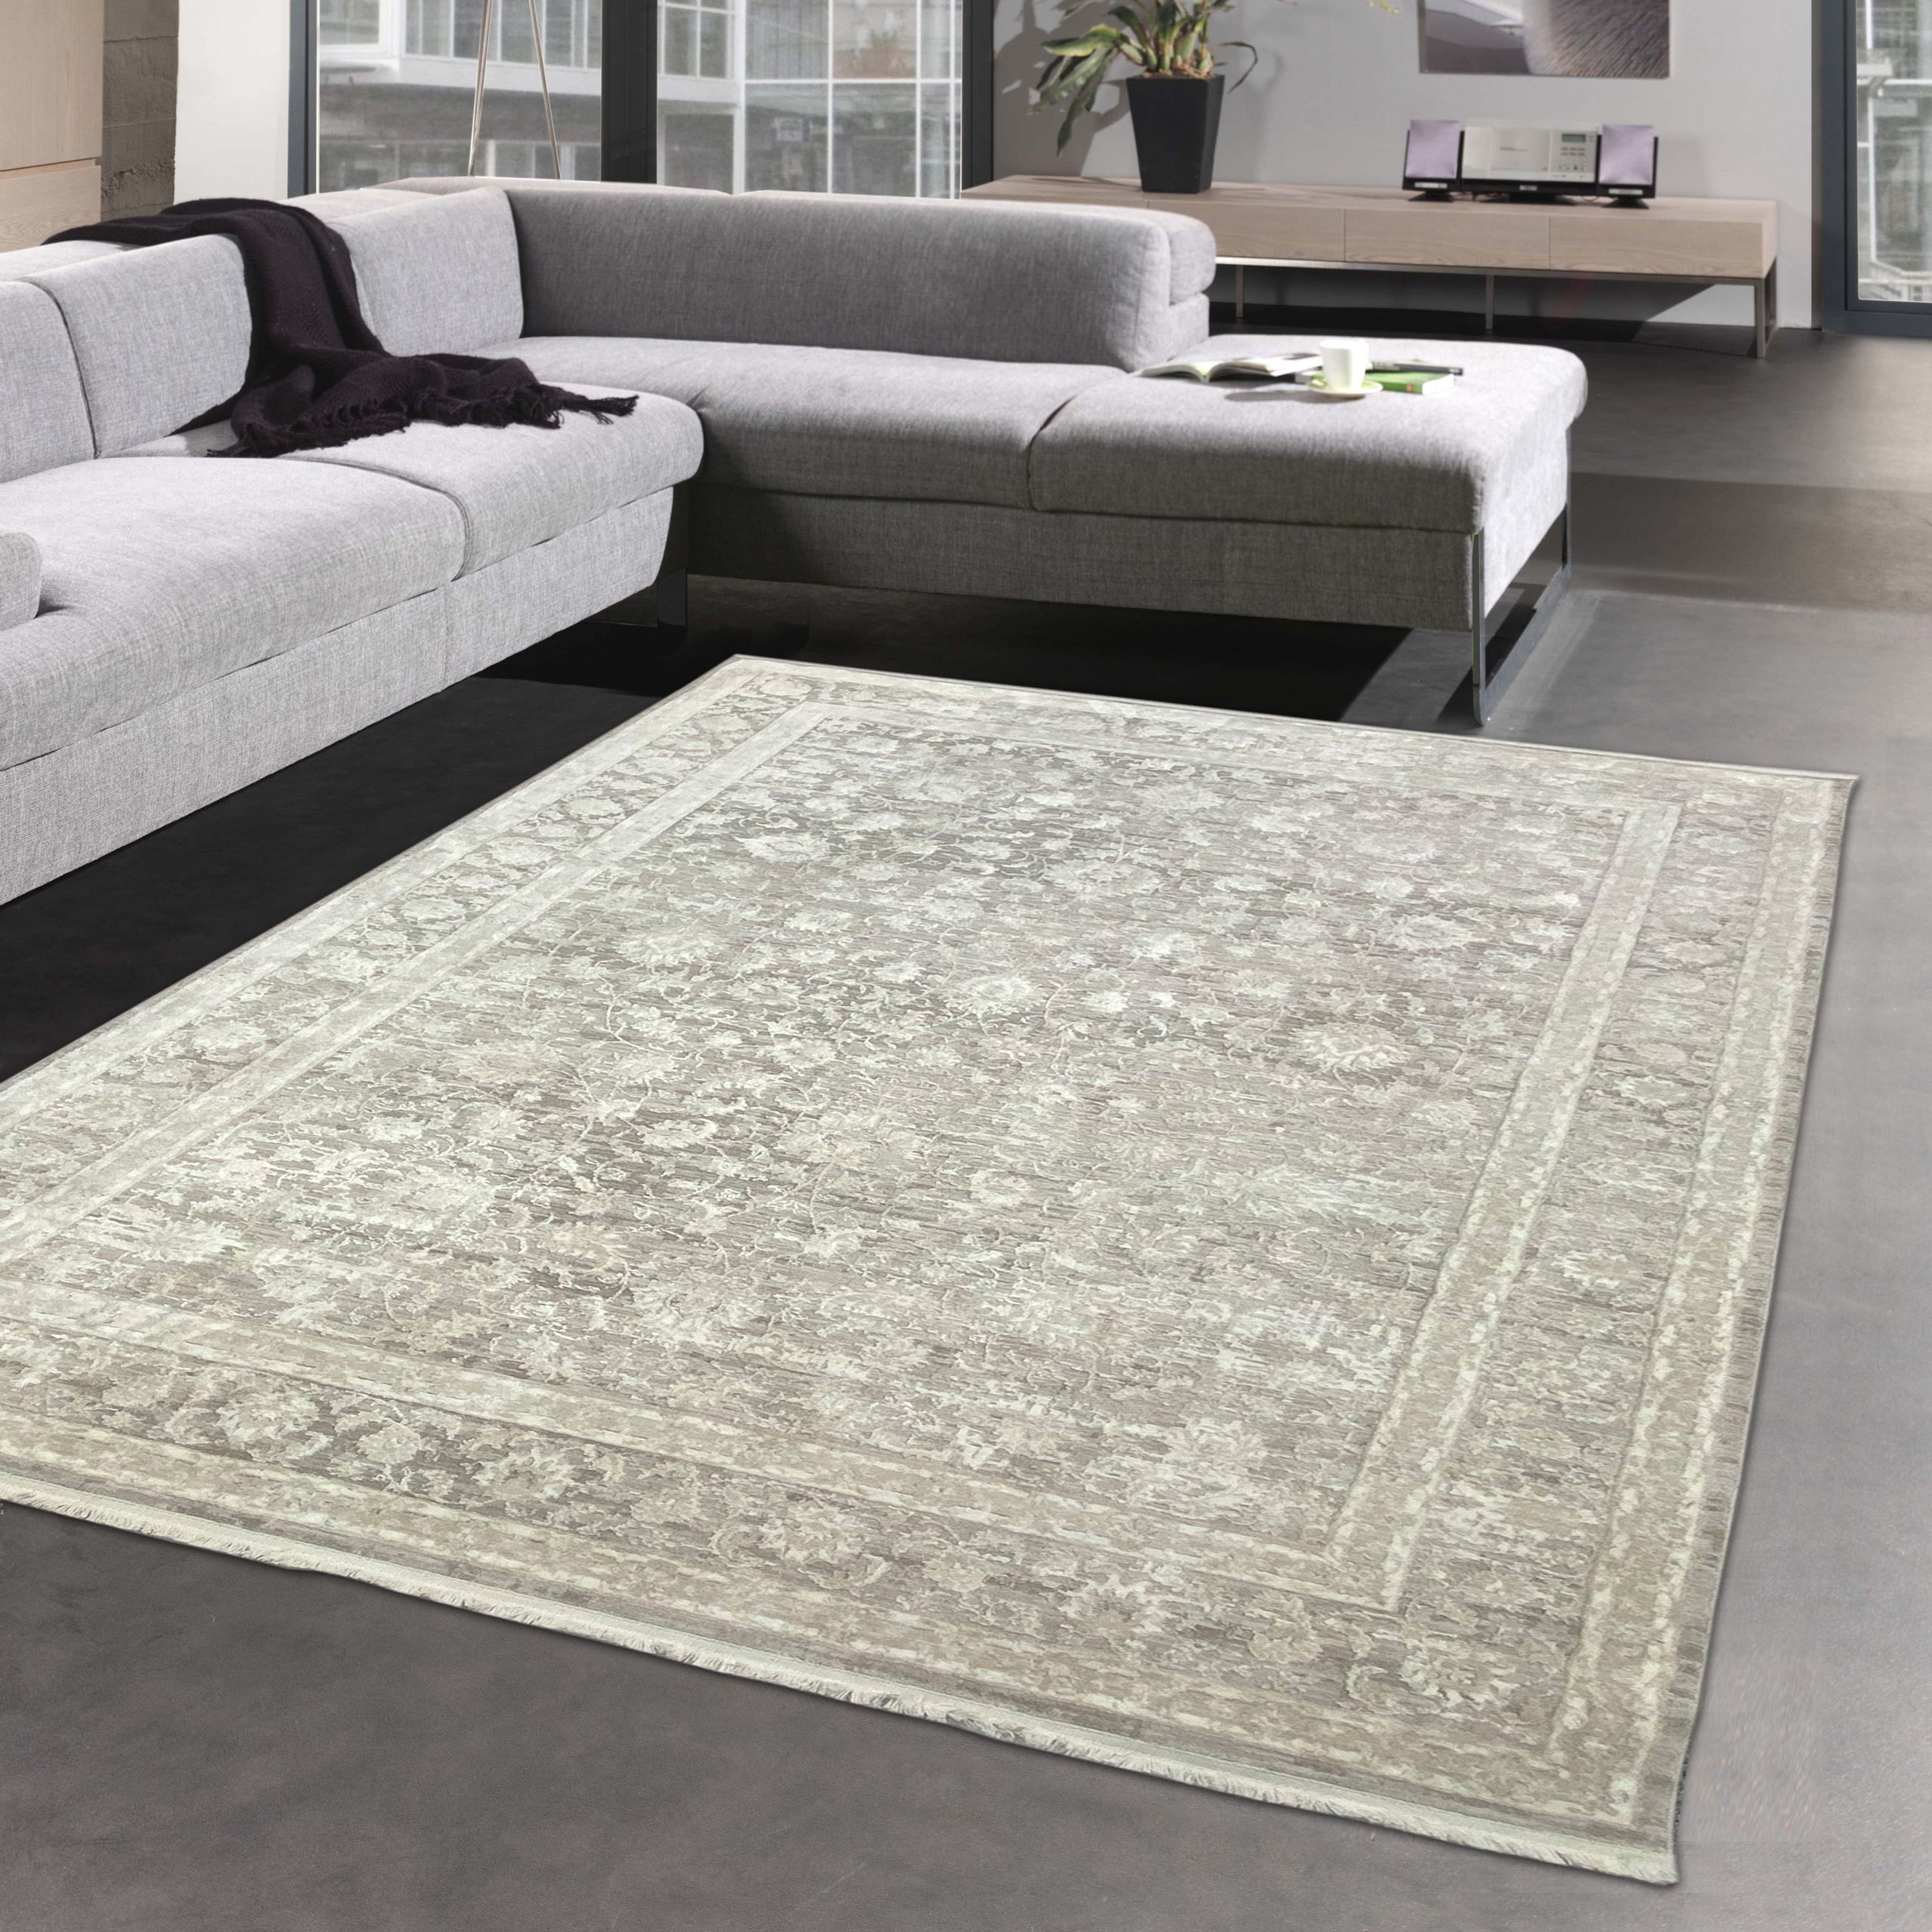 Orientalische Teppiche guter Qualität CARPETIA kaufen günstig | online